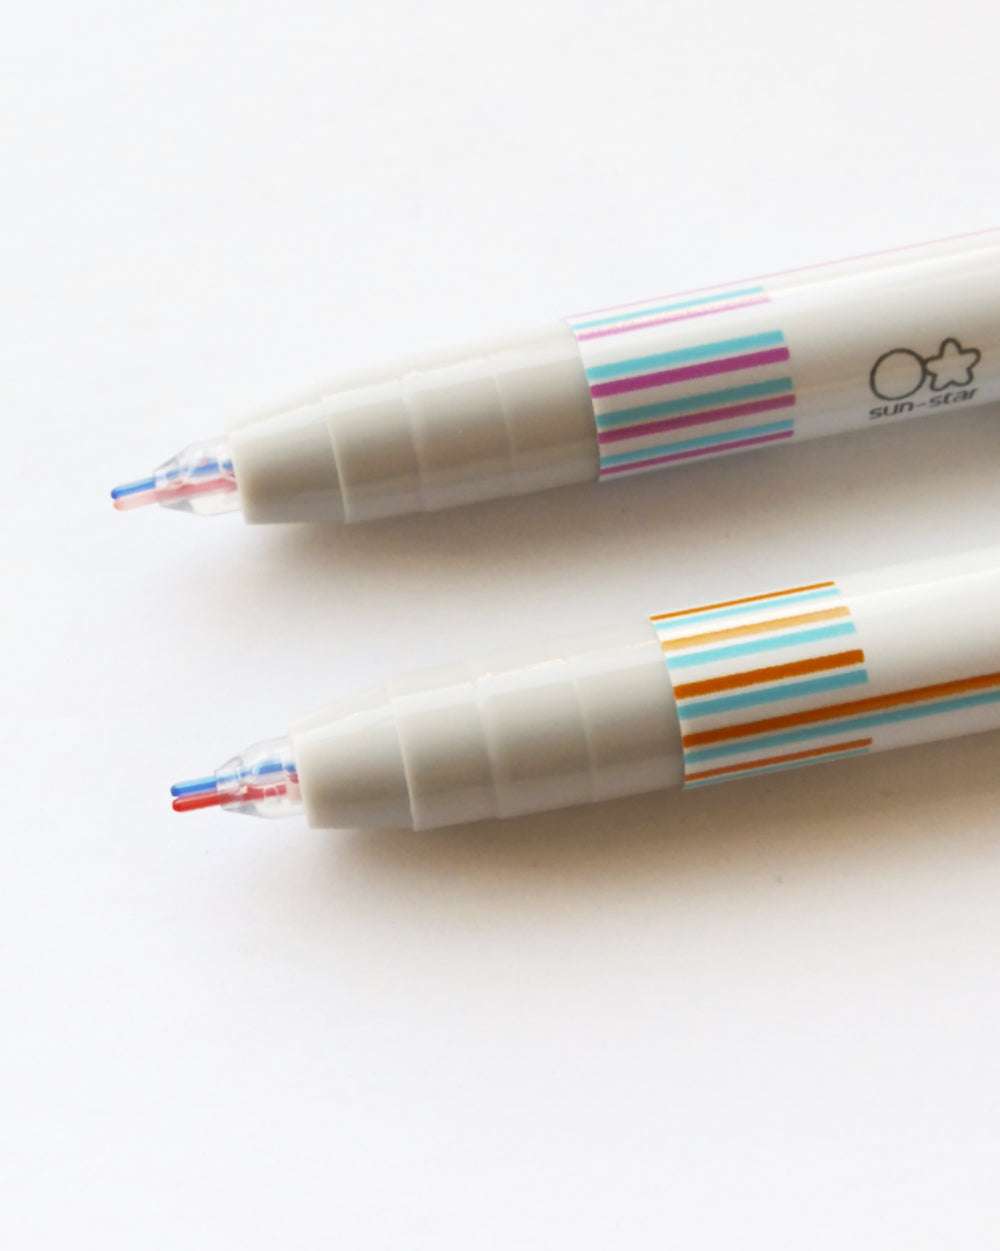 Two Color Pen Twiink